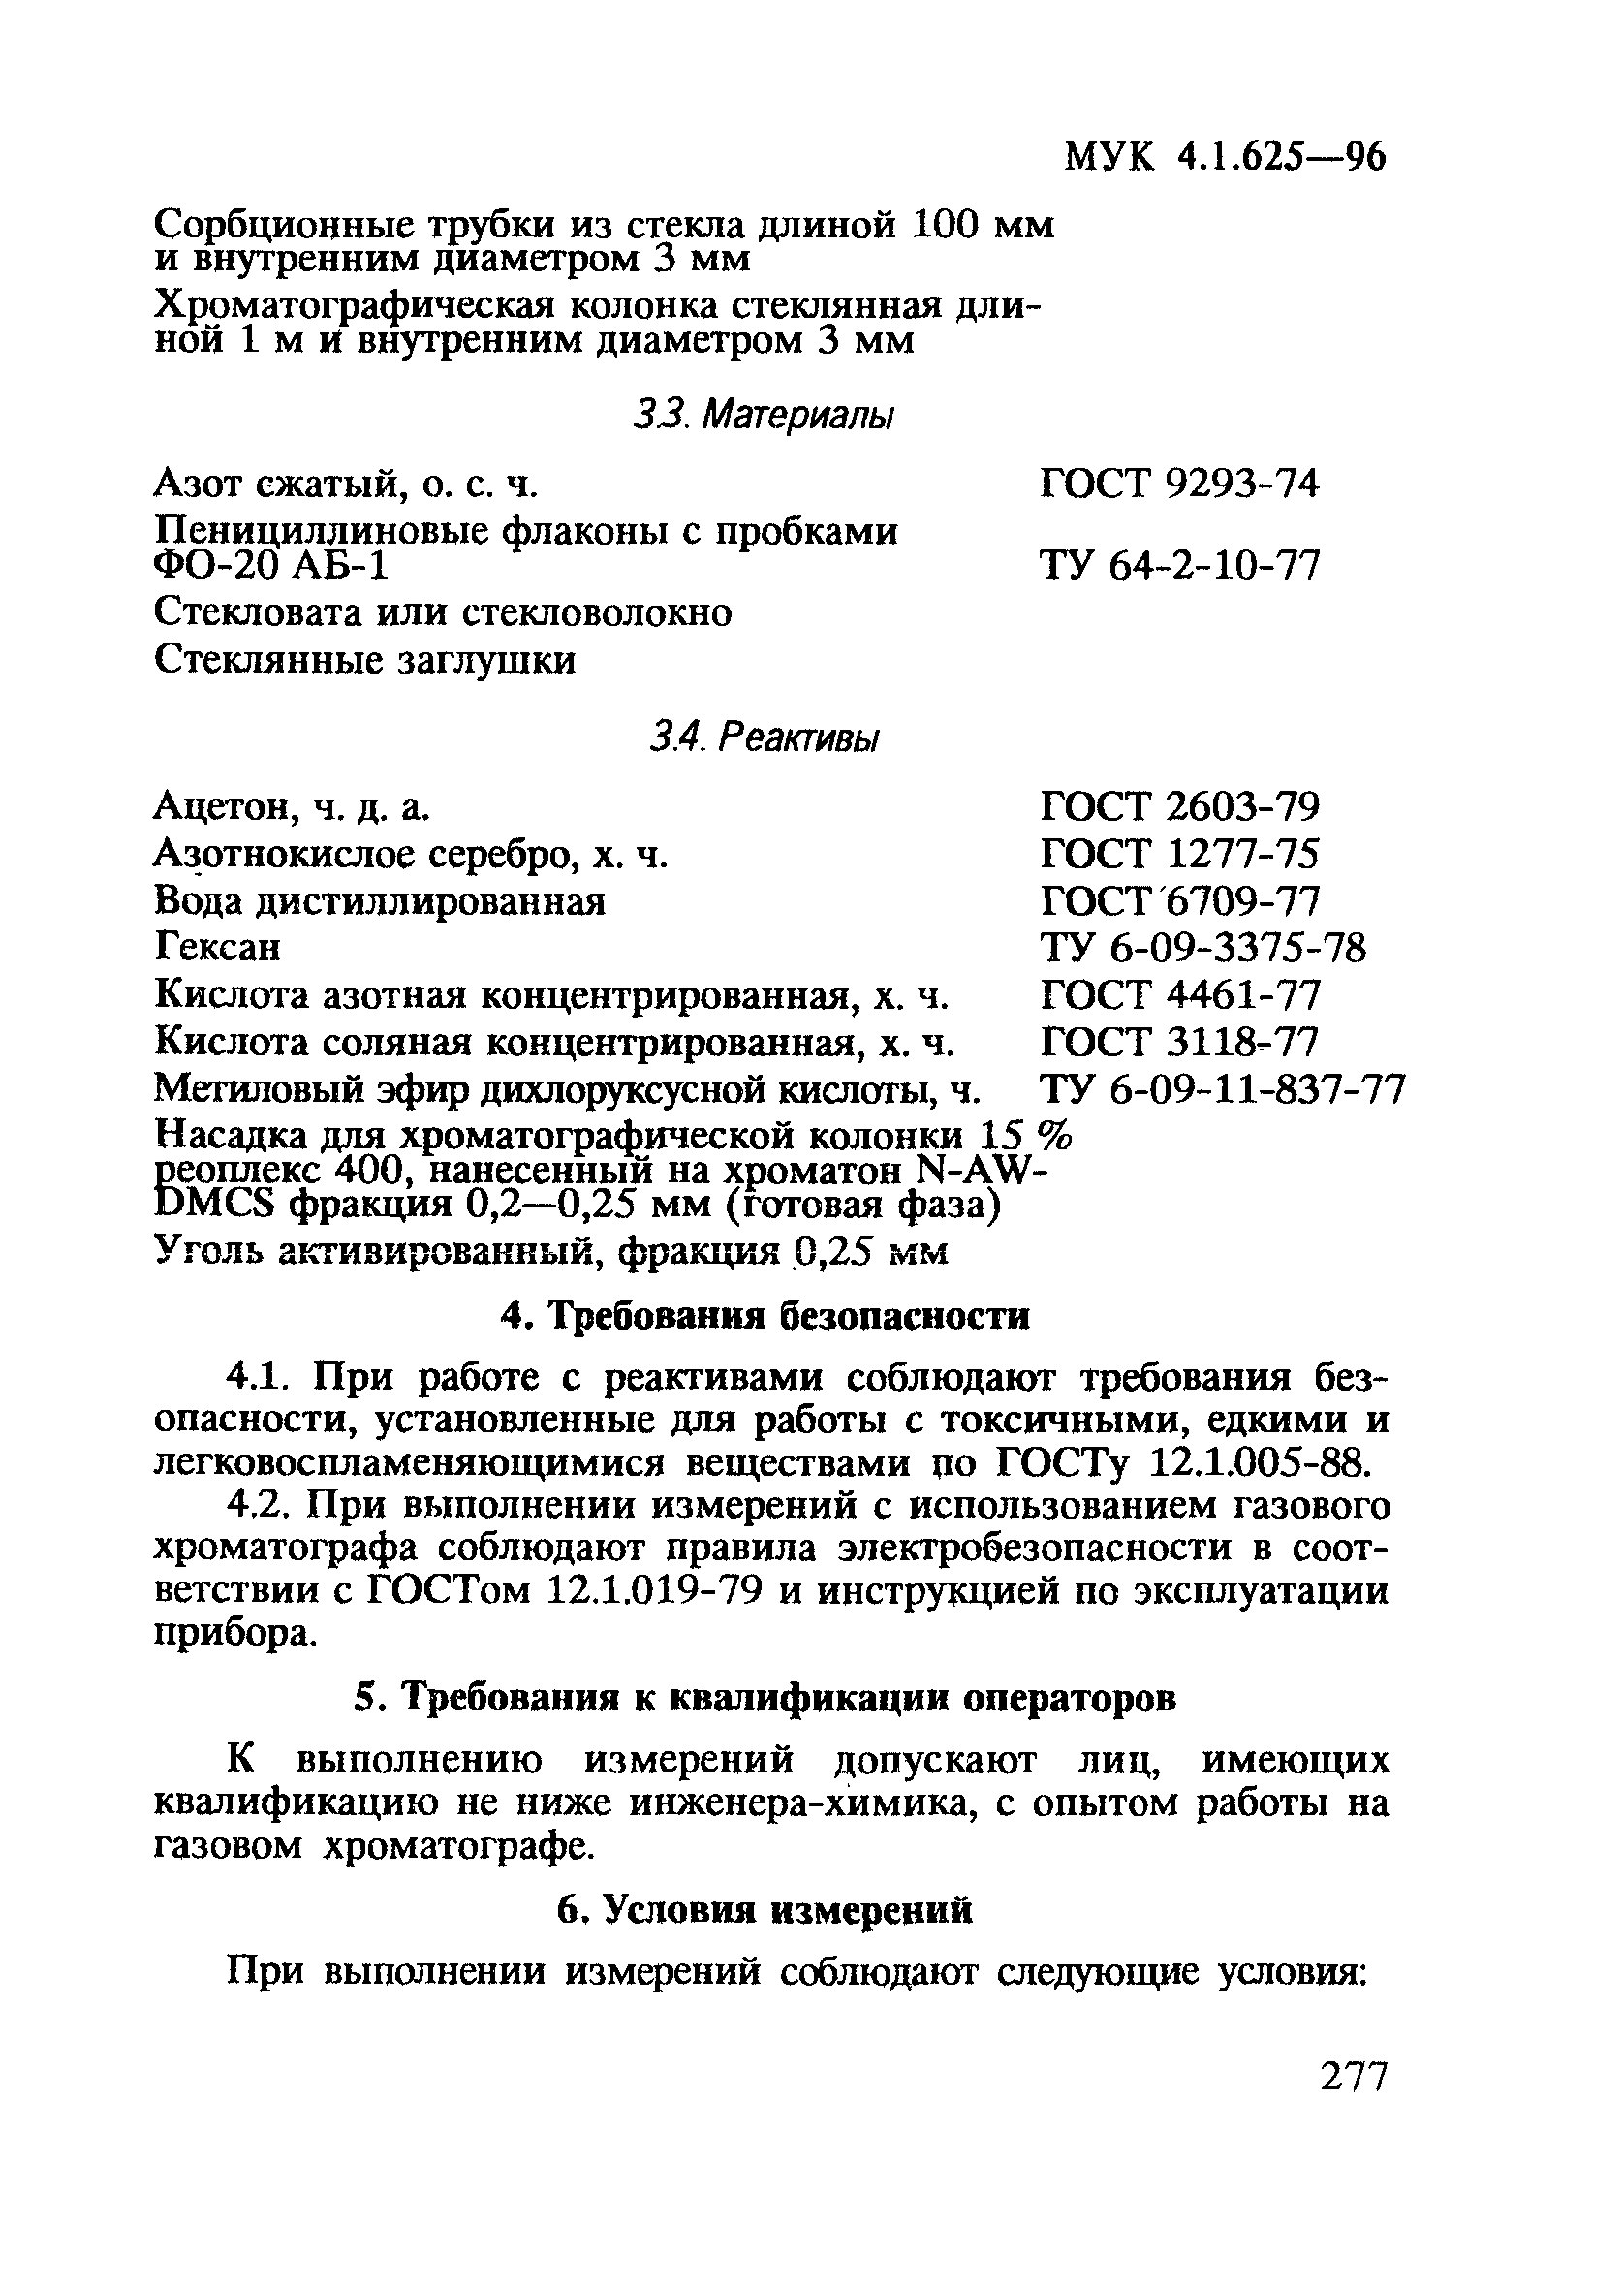 МУК 4.1.625-96